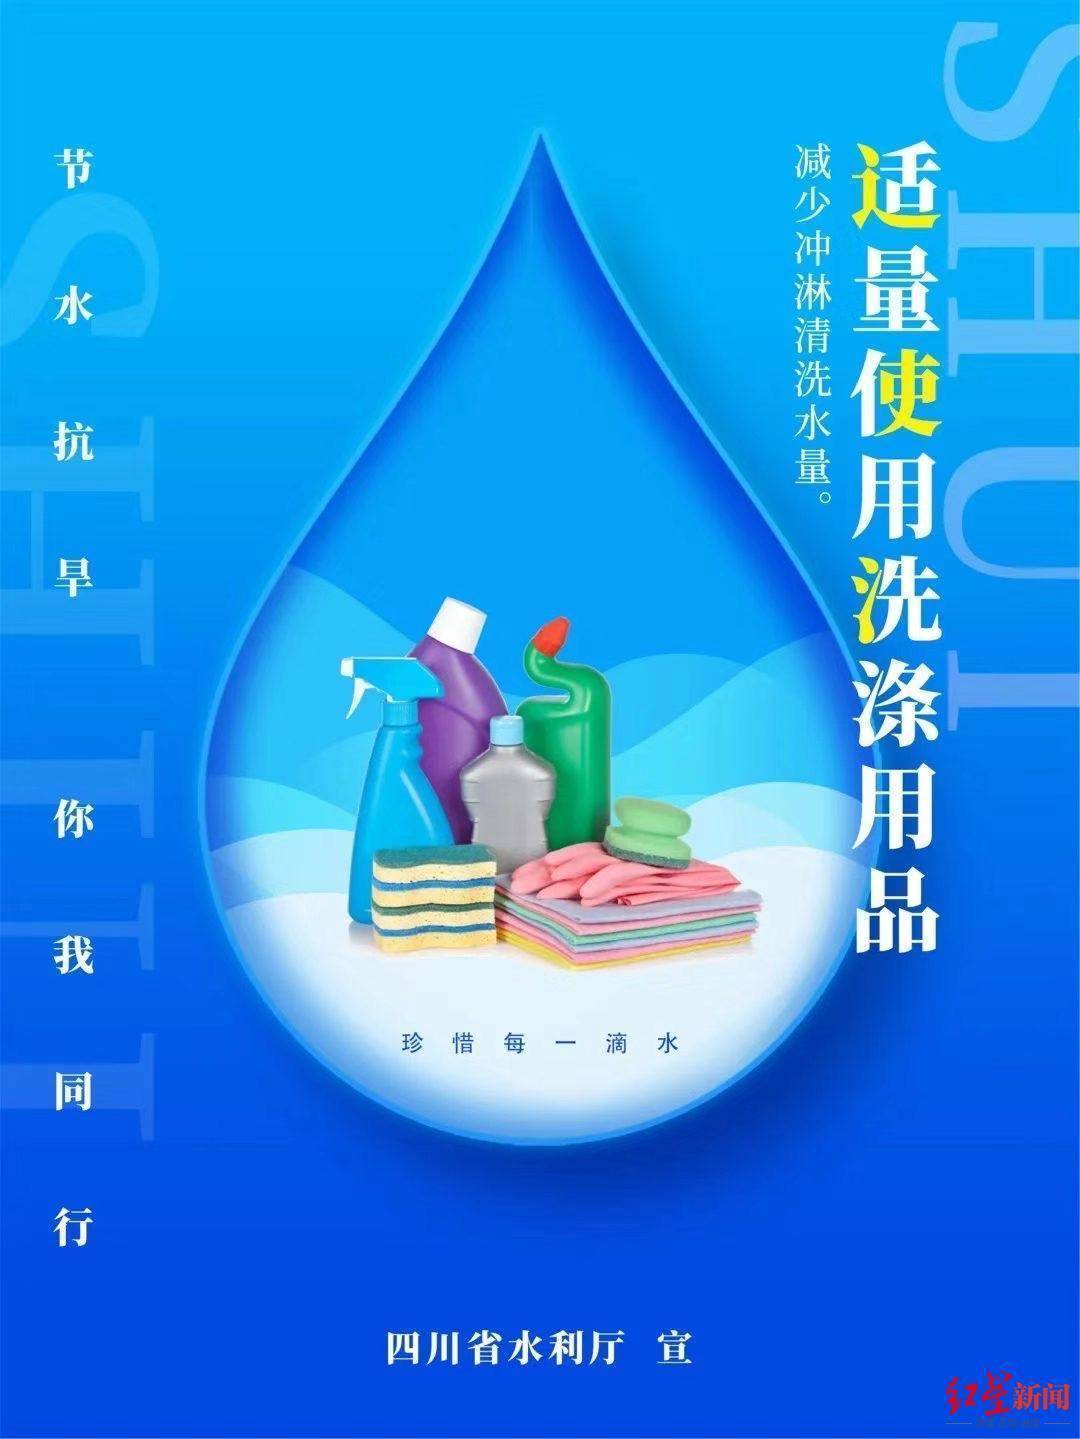 四川向全省人民发出节水倡议